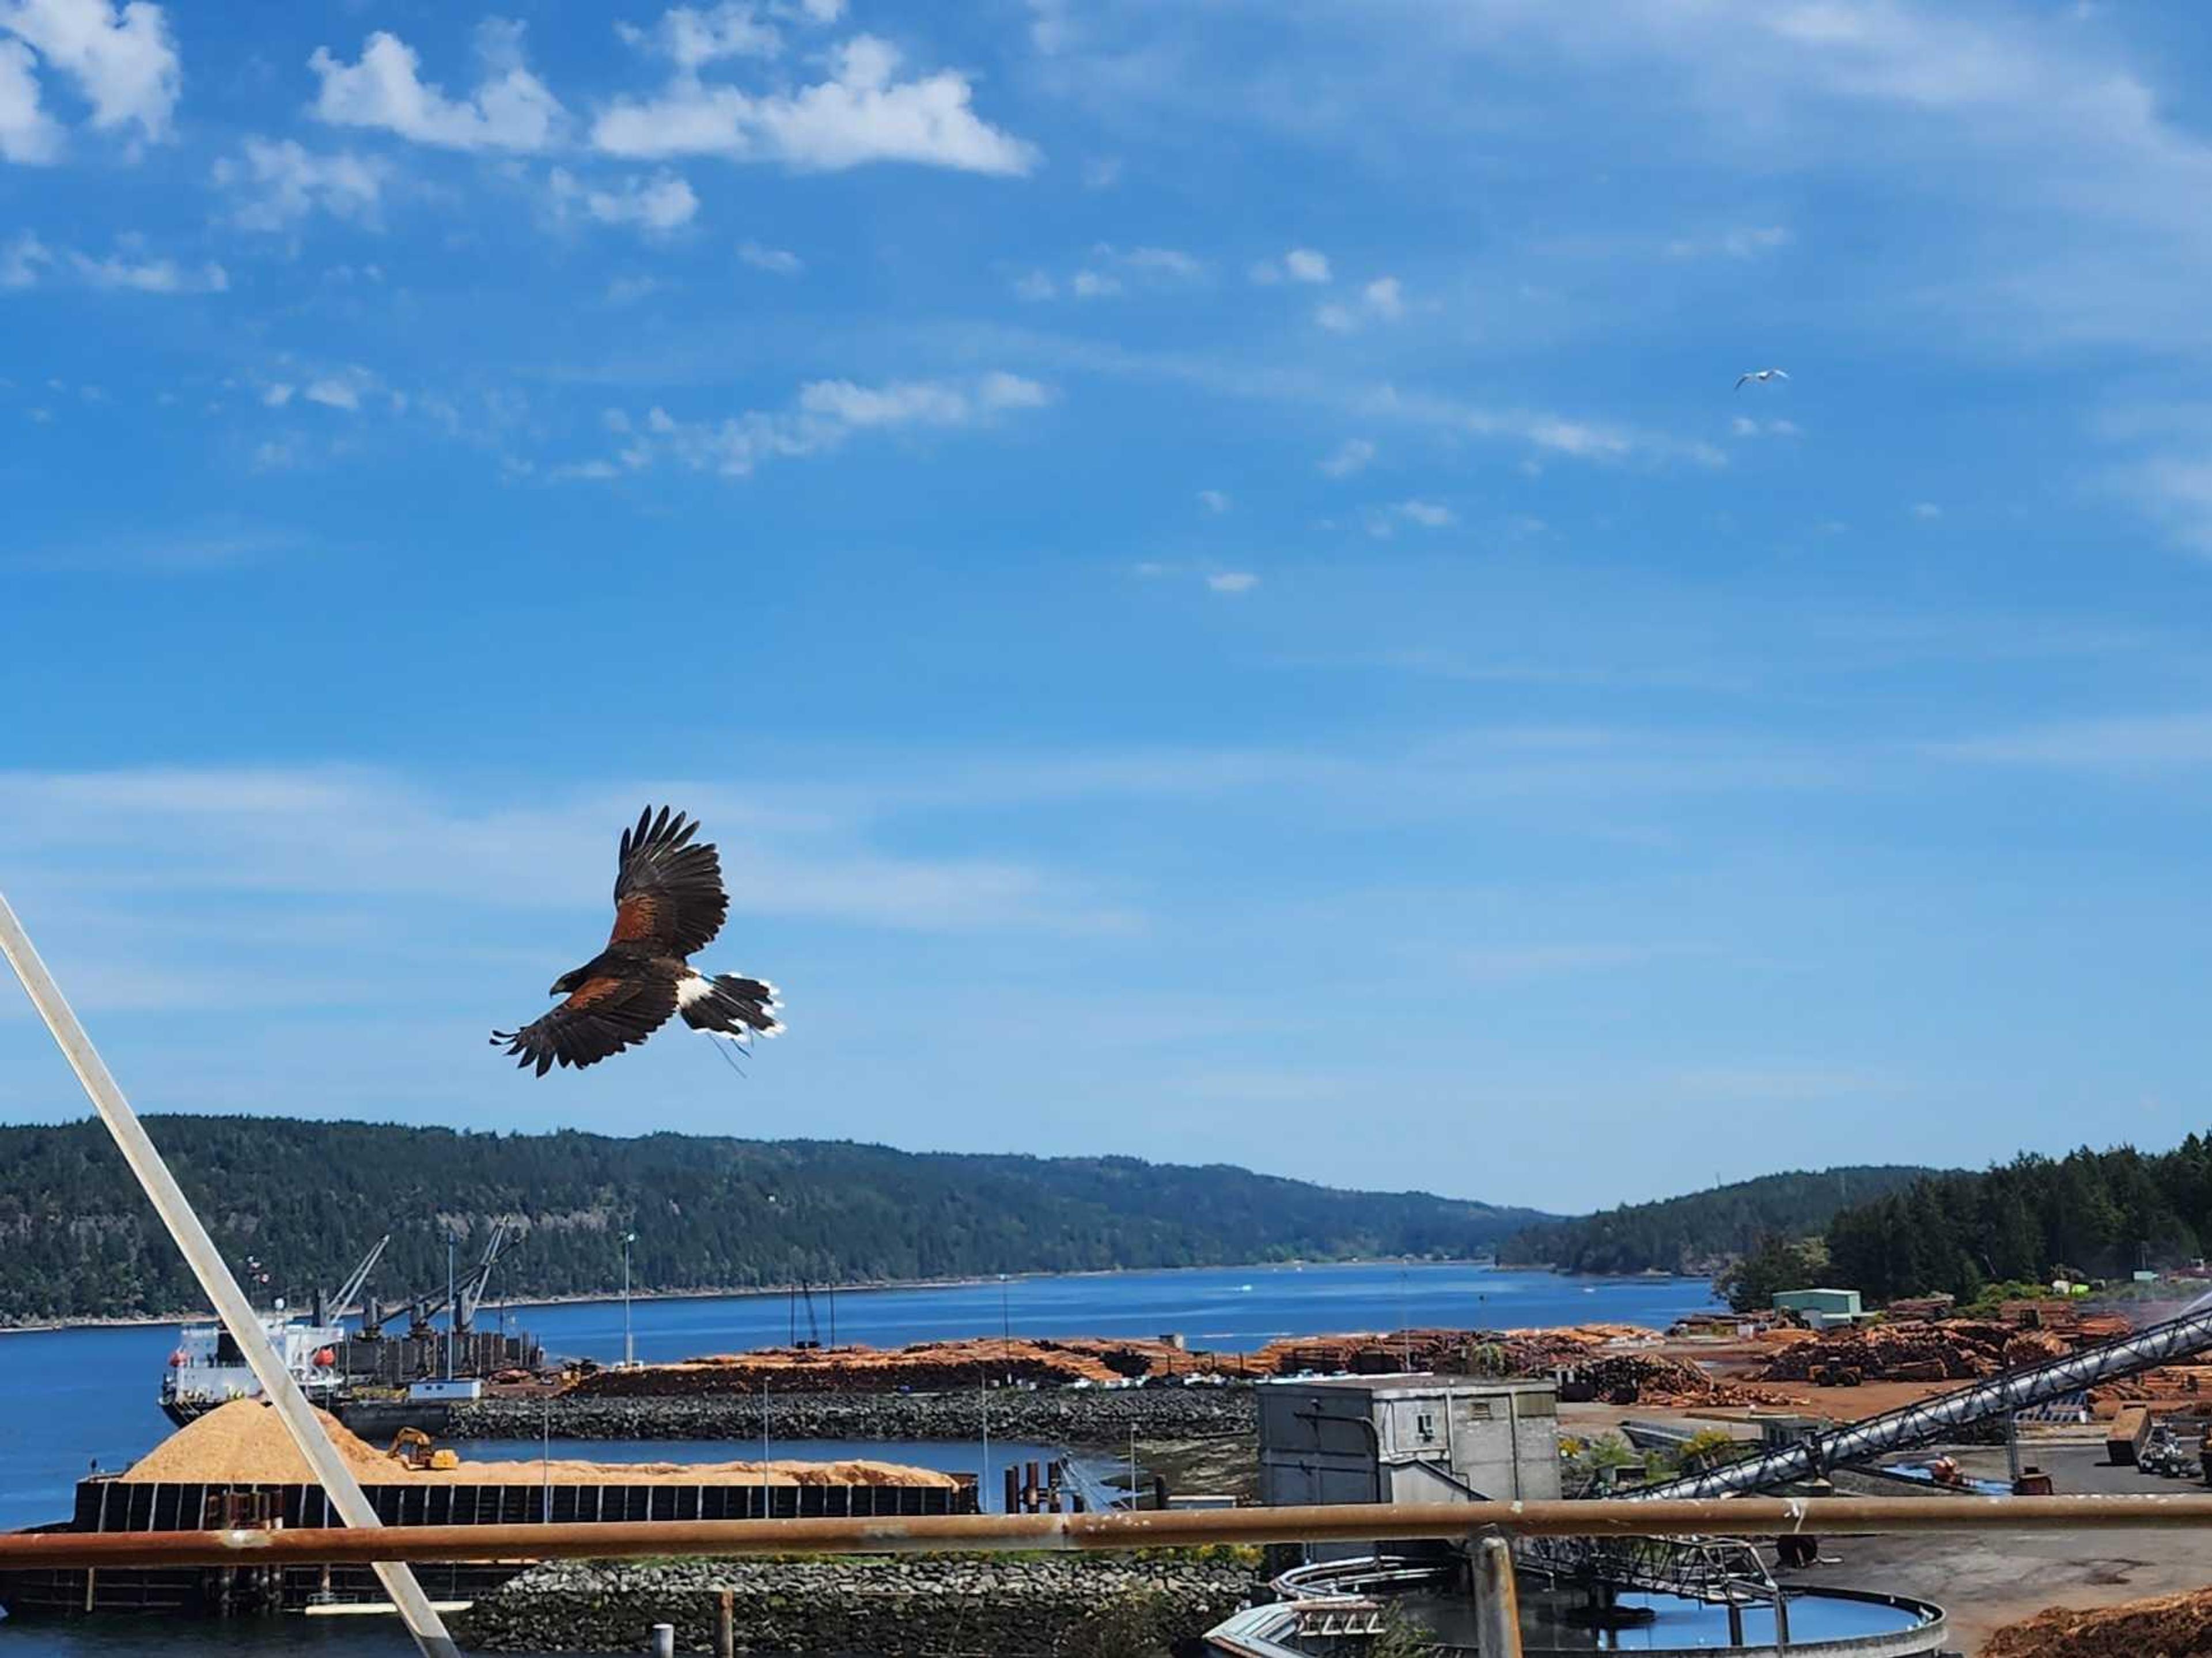 Hawk soaring over a sawmill